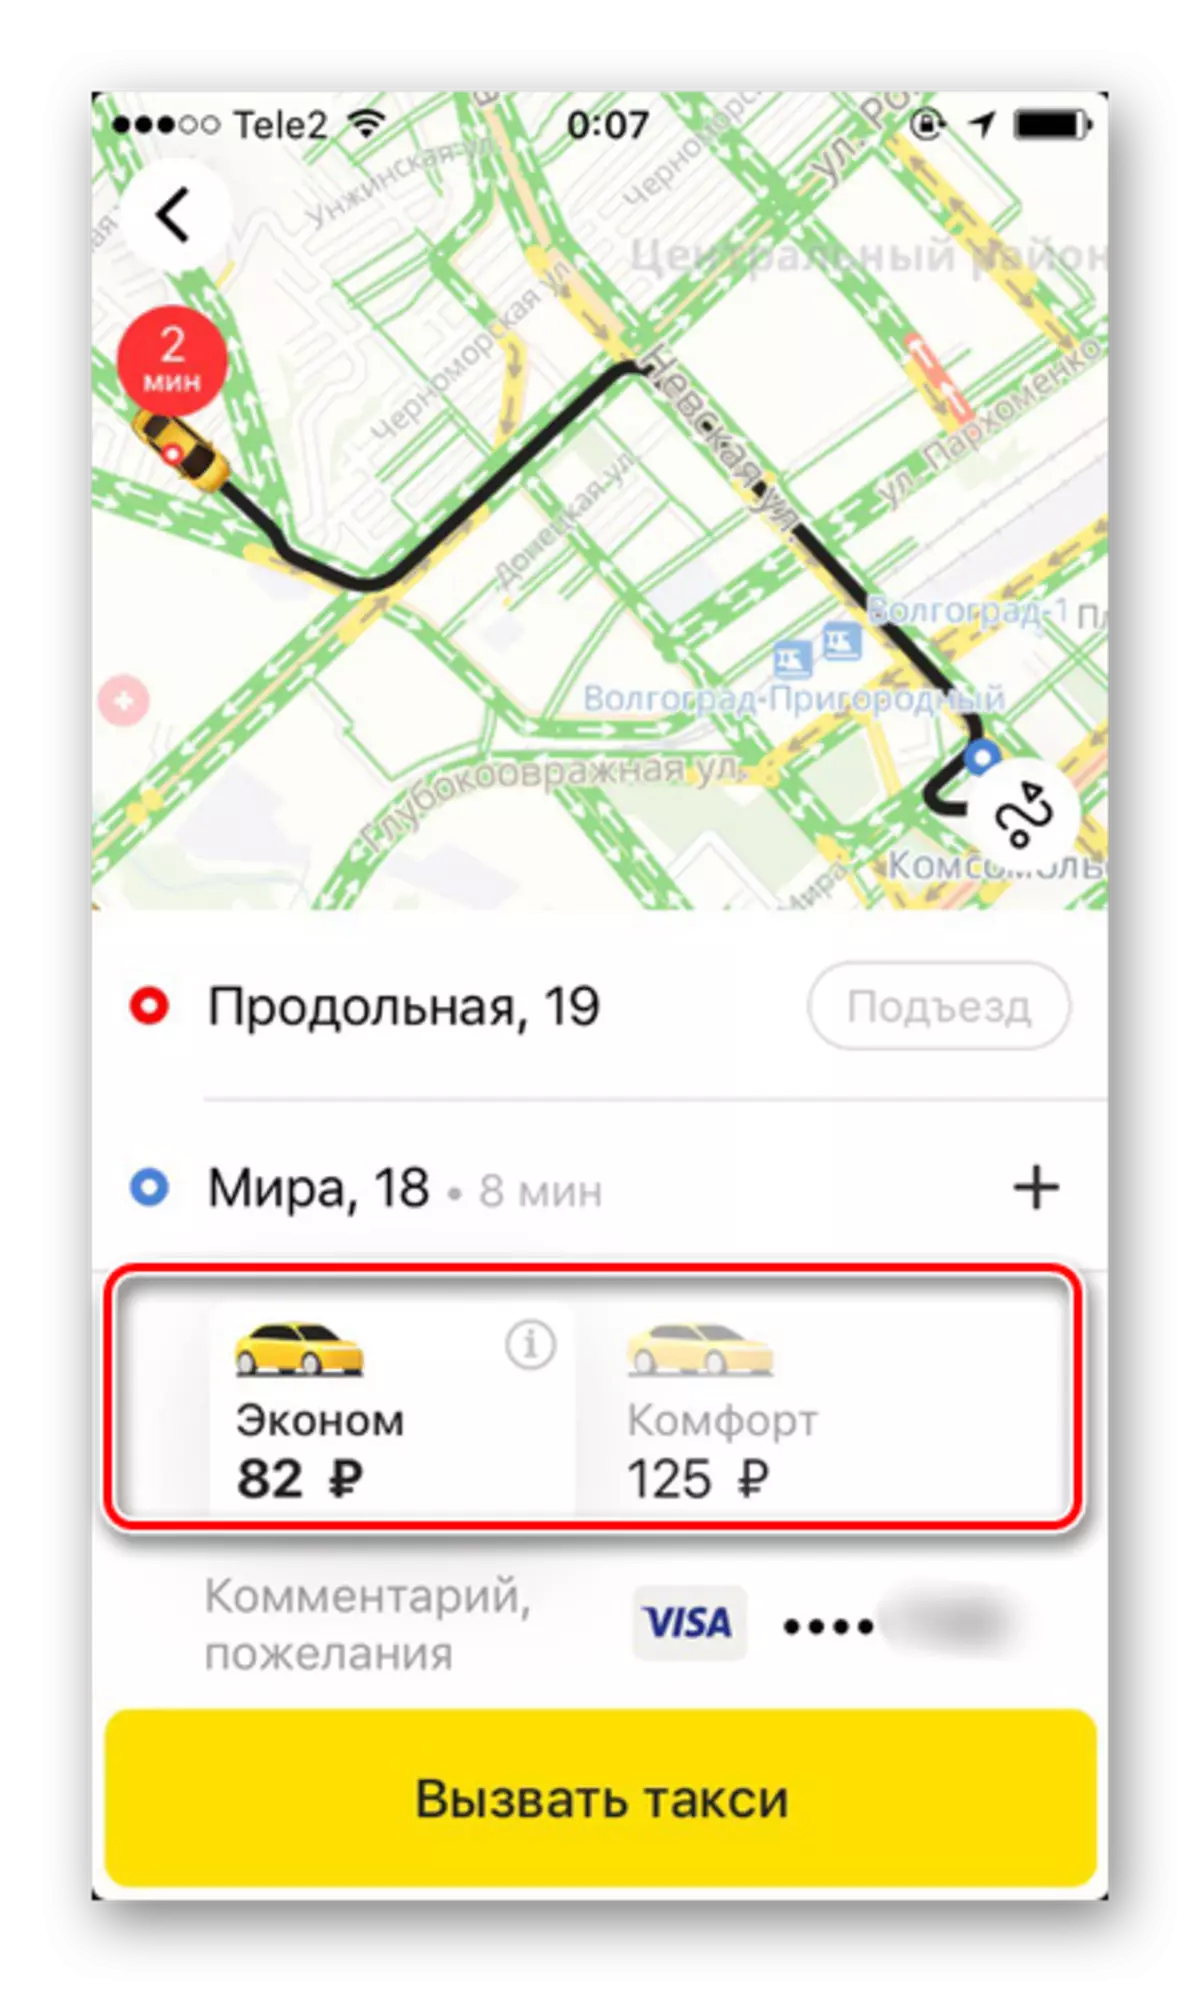 Beschikbare tarieven bij het bestellen van een taxi in Yandex.taxi-applicatie op de iPhone